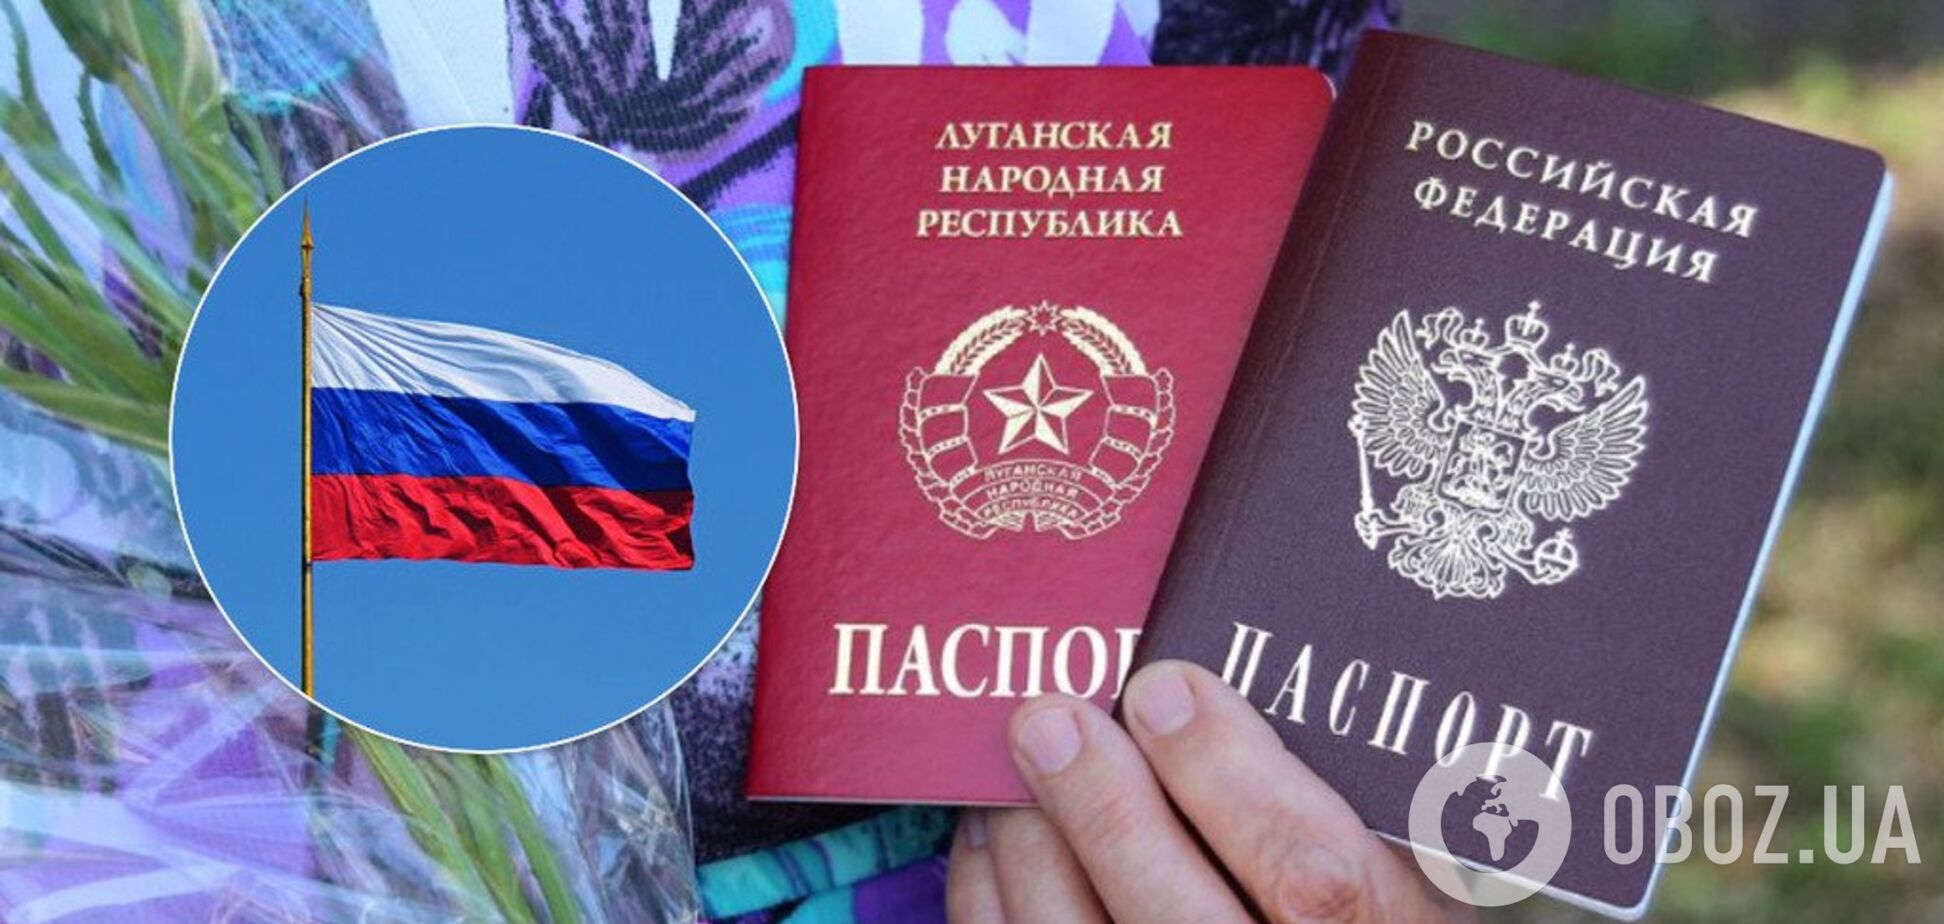 'Угрозы не напугают!' Россия вновь разгневалась из-за паспортов для 'ДНР' и 'ЛНР'